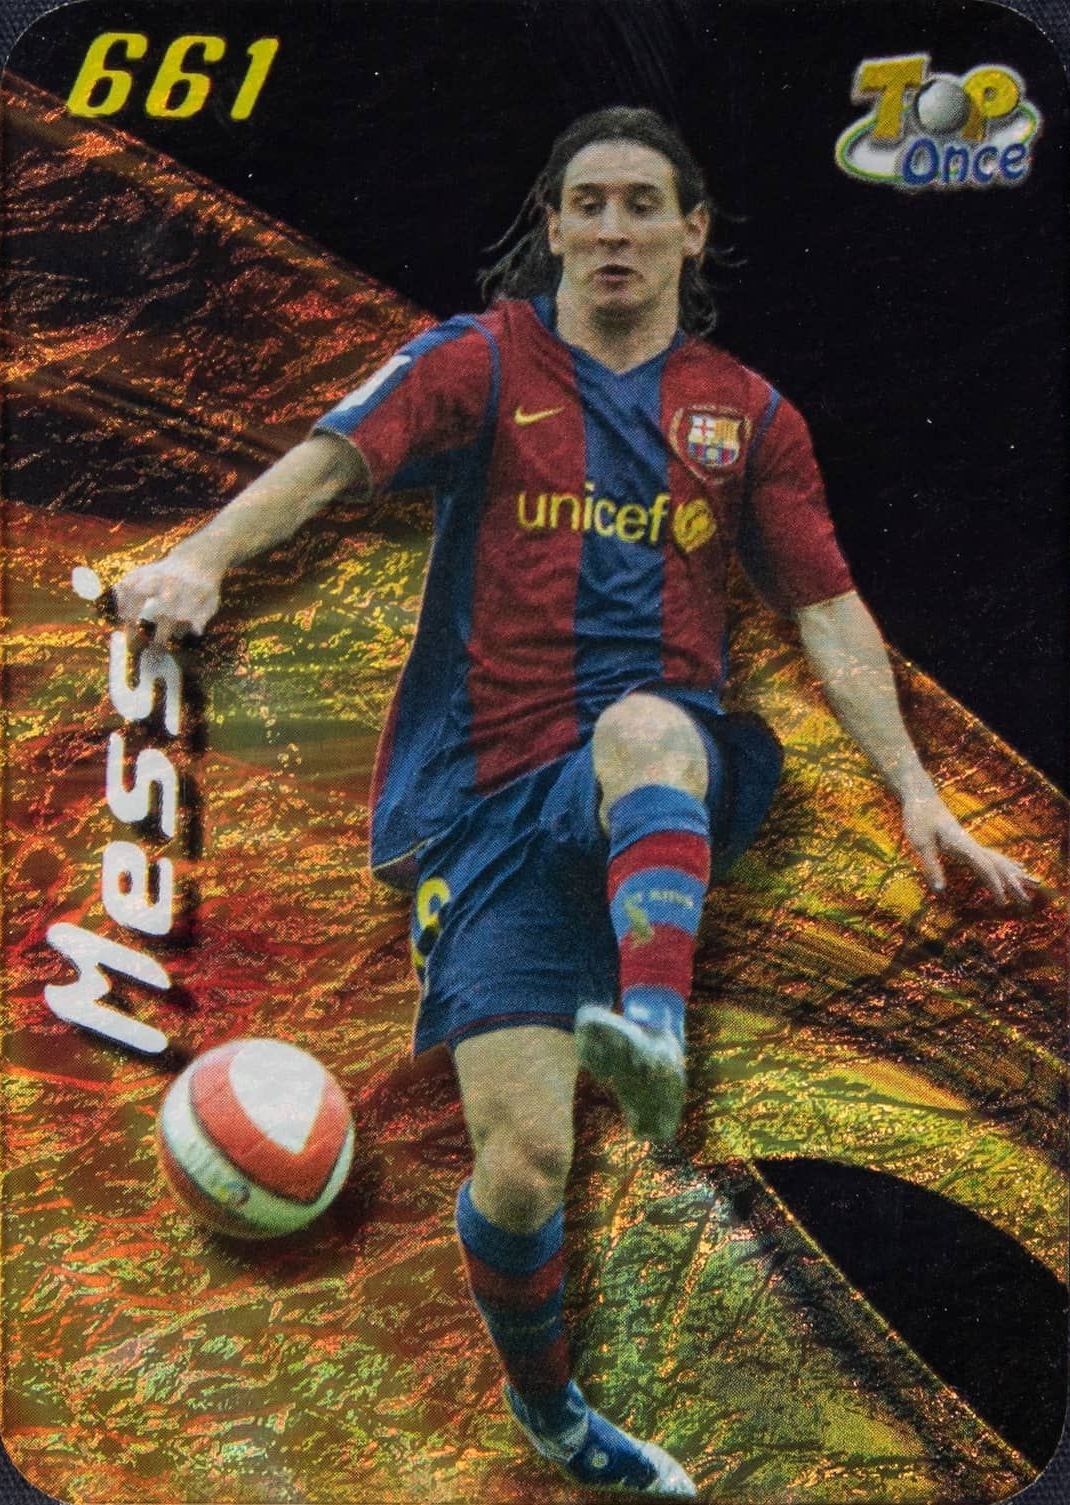 2007 Mundi Cromo Las Fichas de La Liga Lionel Messi #661 Soccer Card